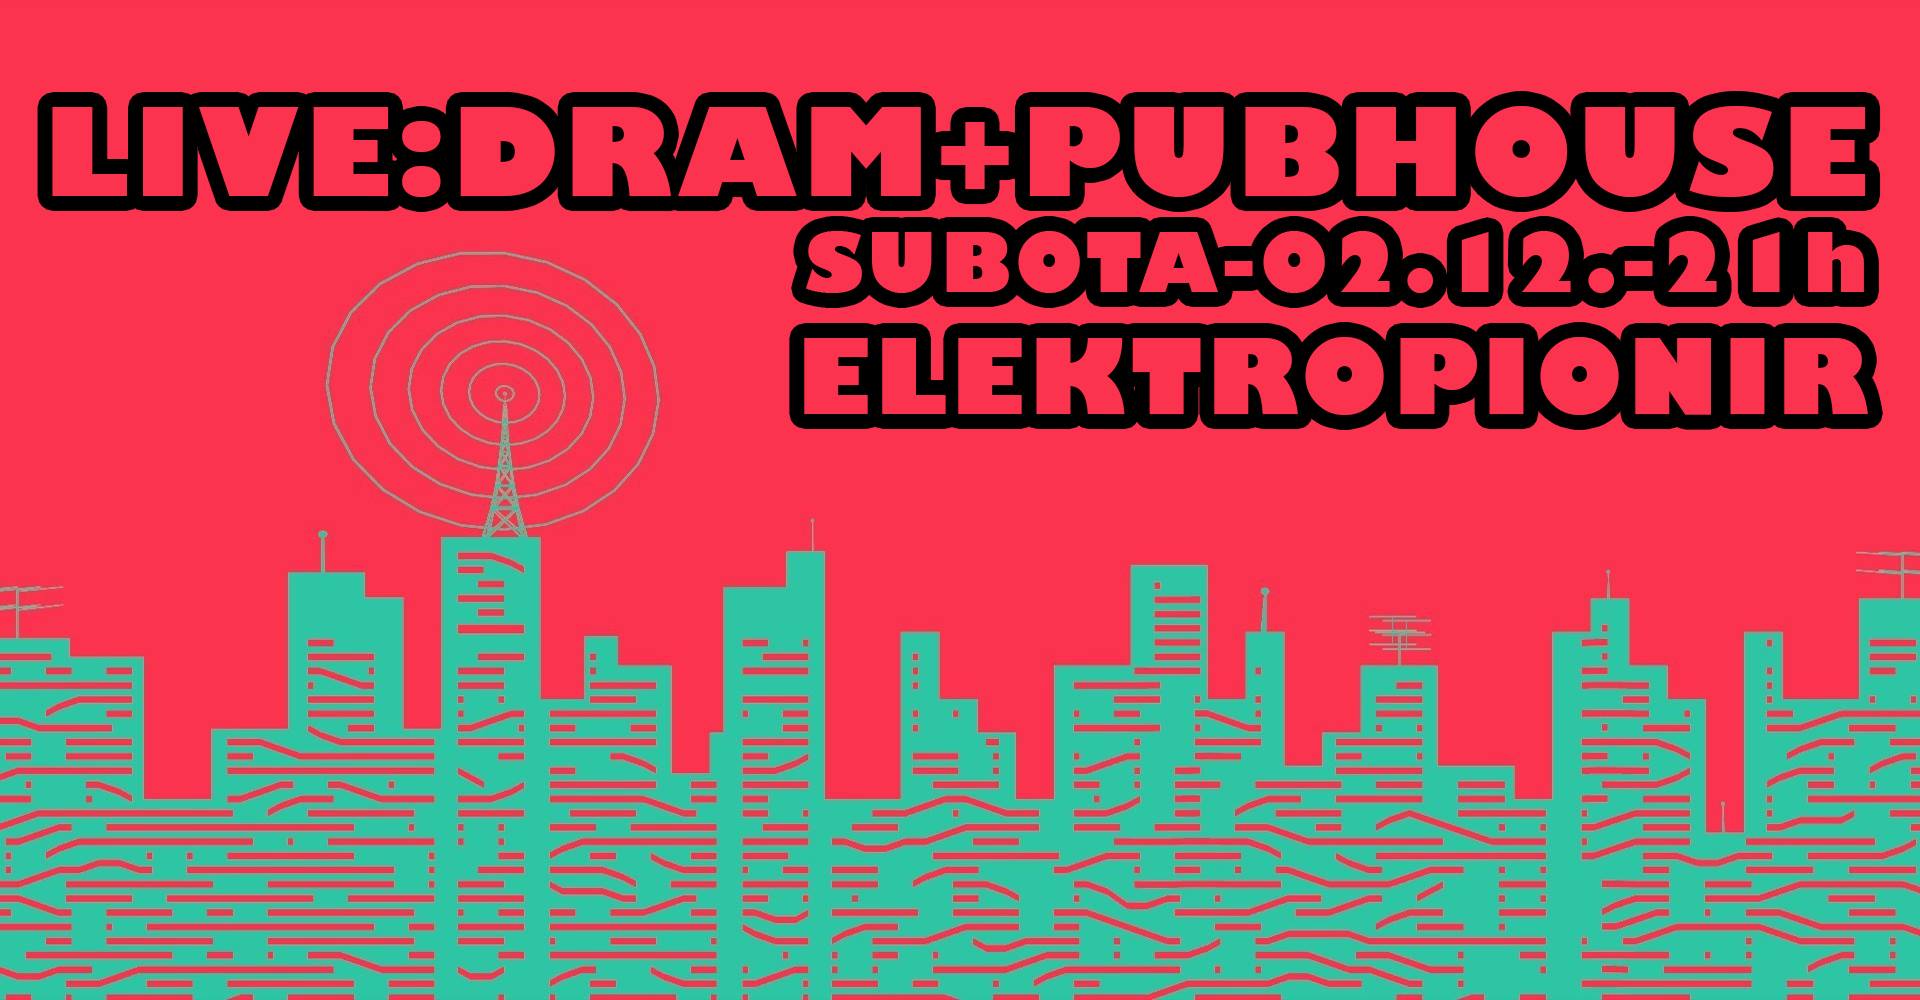 Dram + Pub House 02.12.2017. Elektropion